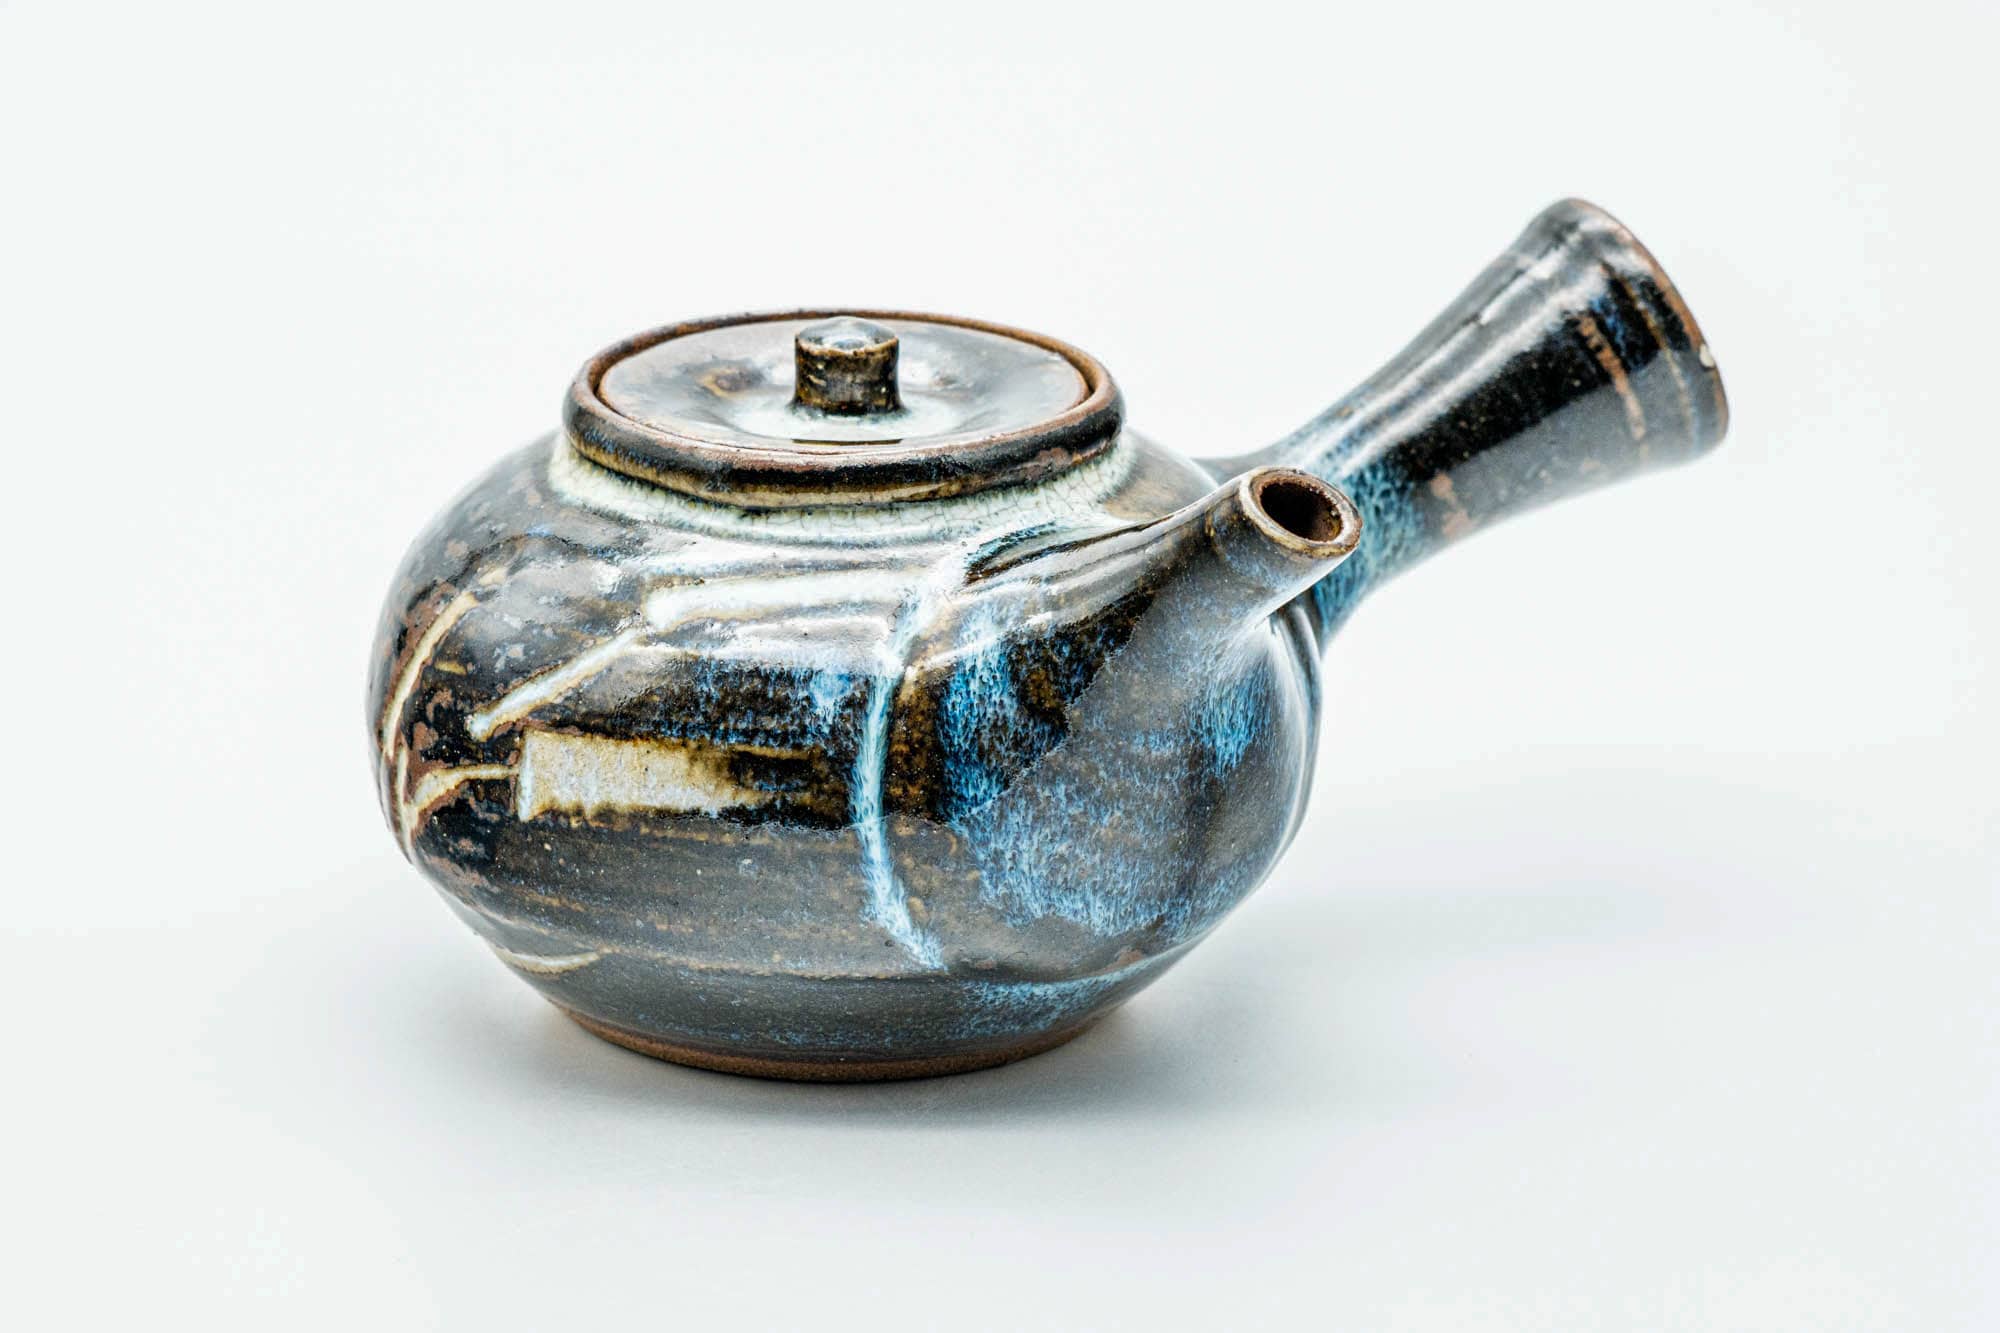 Japanese Kyusu - Spiraling Brown Blue Glazed Do-ake Teapot - 250ml